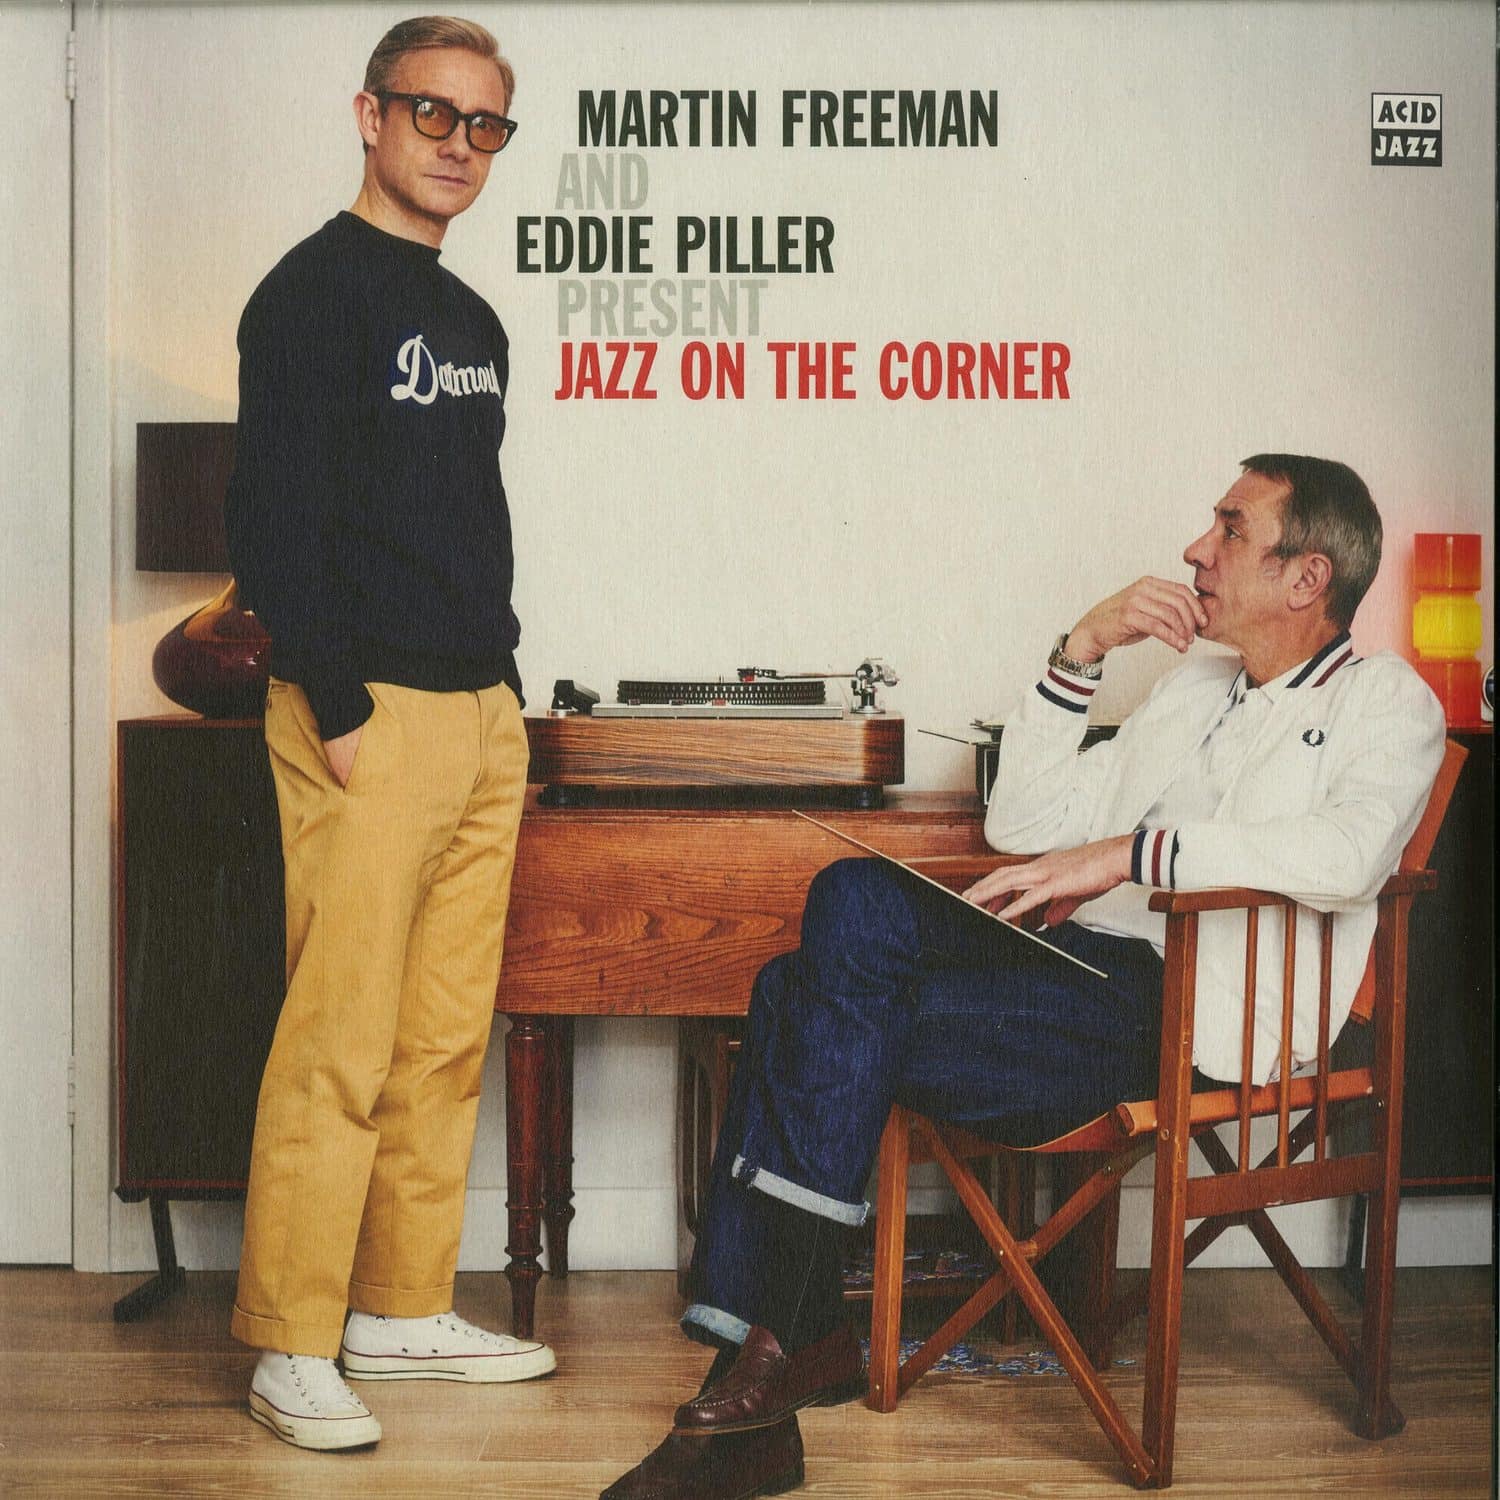 Martin Freeman & Eddie Piller - PRESENT JAZZ ON THE CORNER 